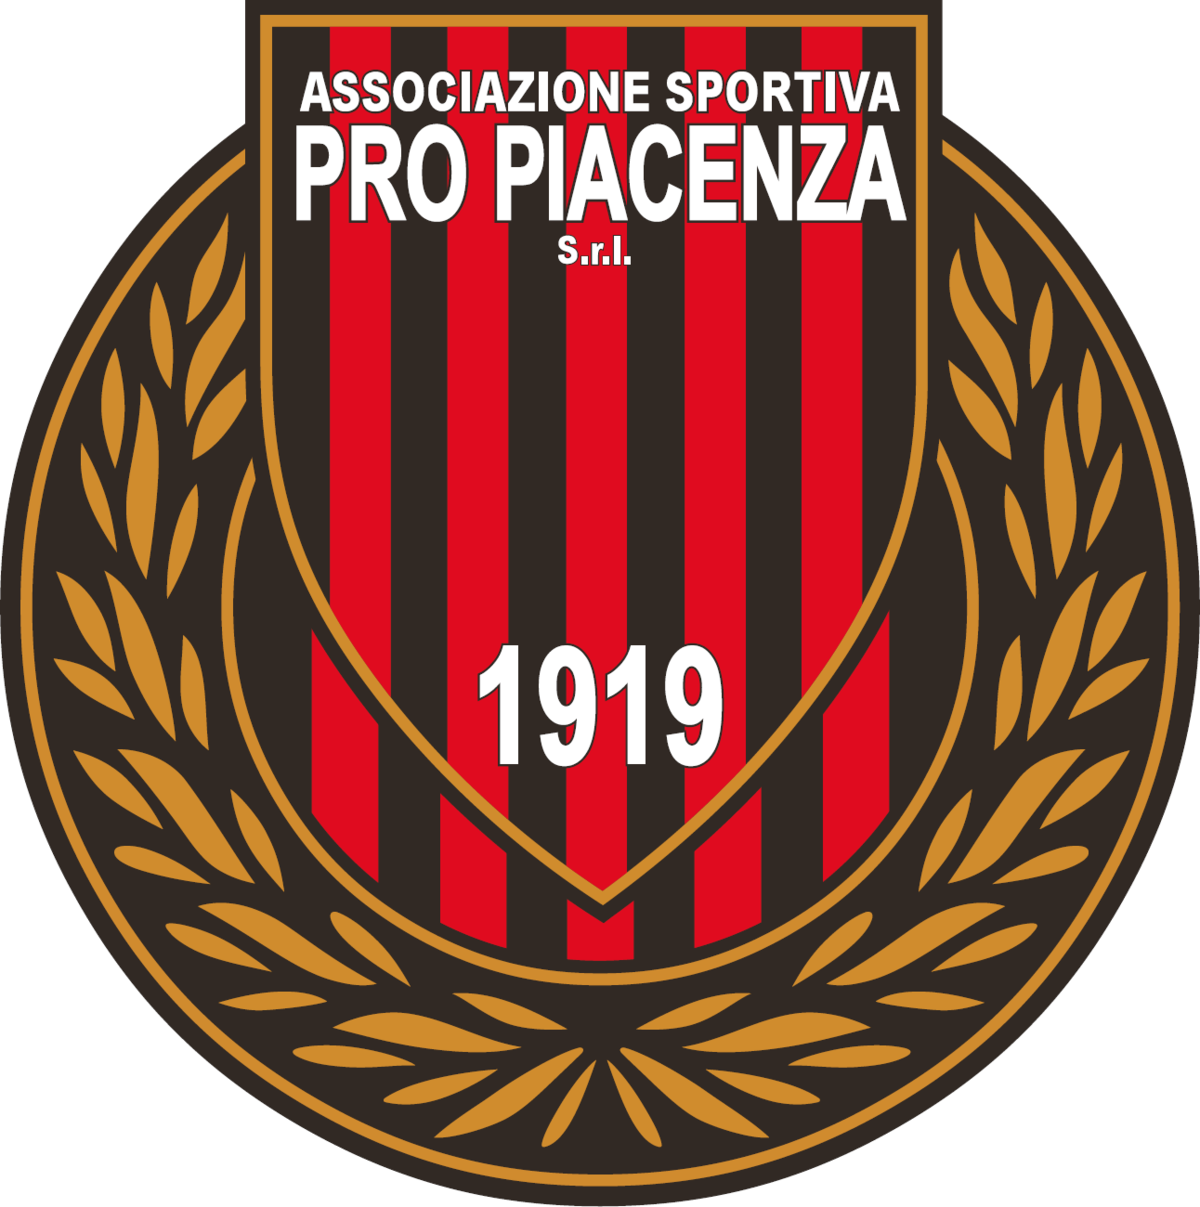 Pro Piacenza: proclamato lo sciopero dei giocatori